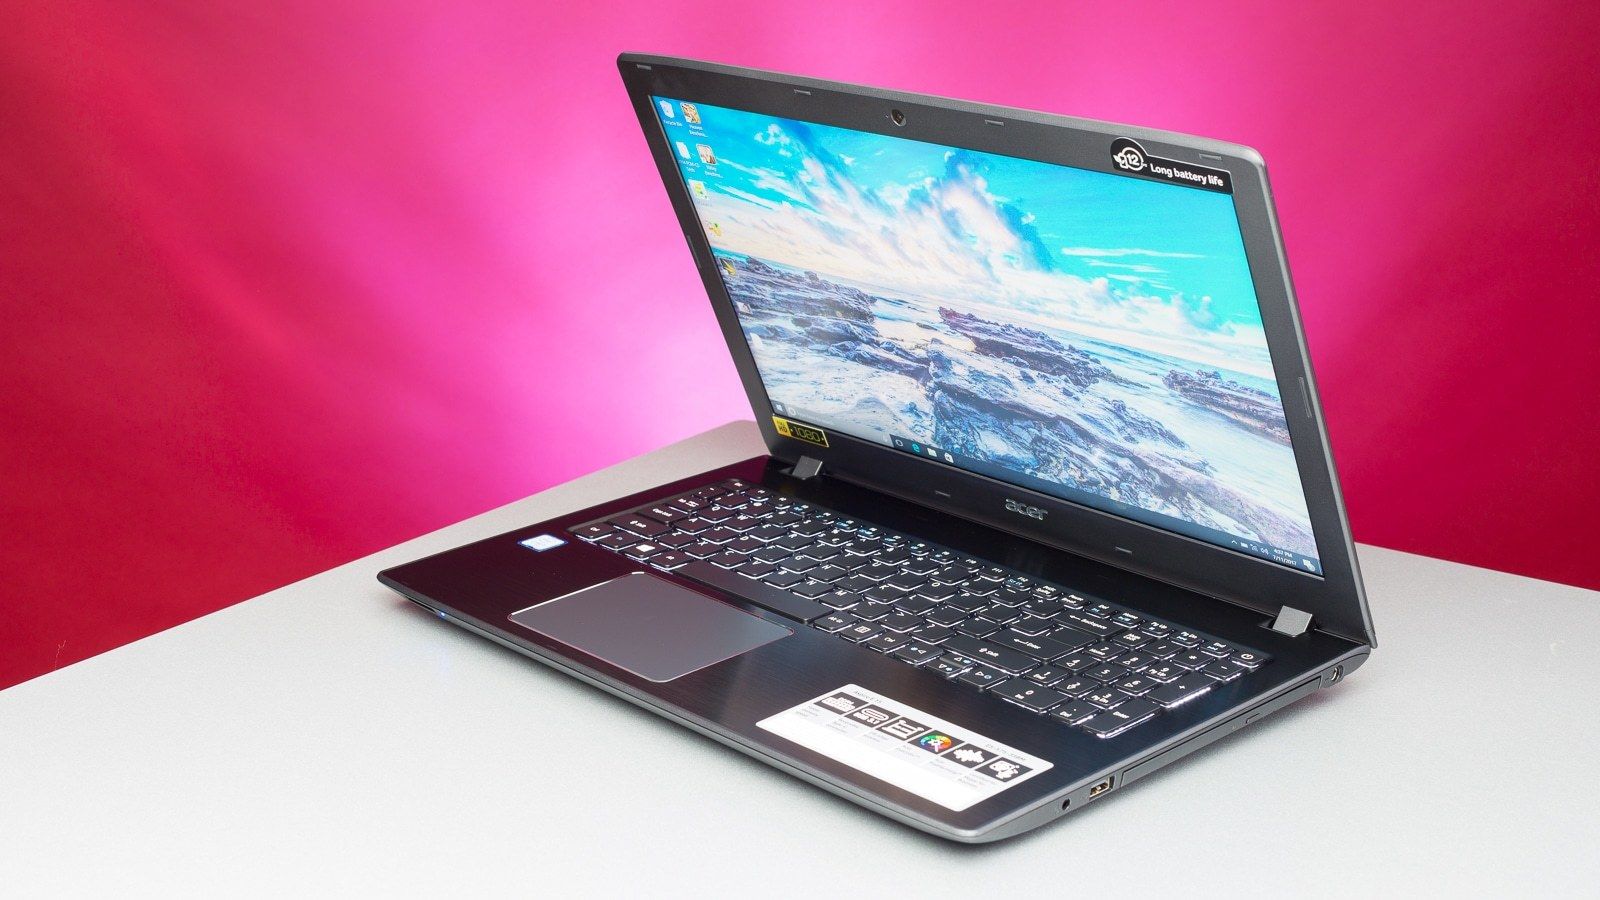 عکس و ویژگی های لپ تاپ Acer Aspire E 15